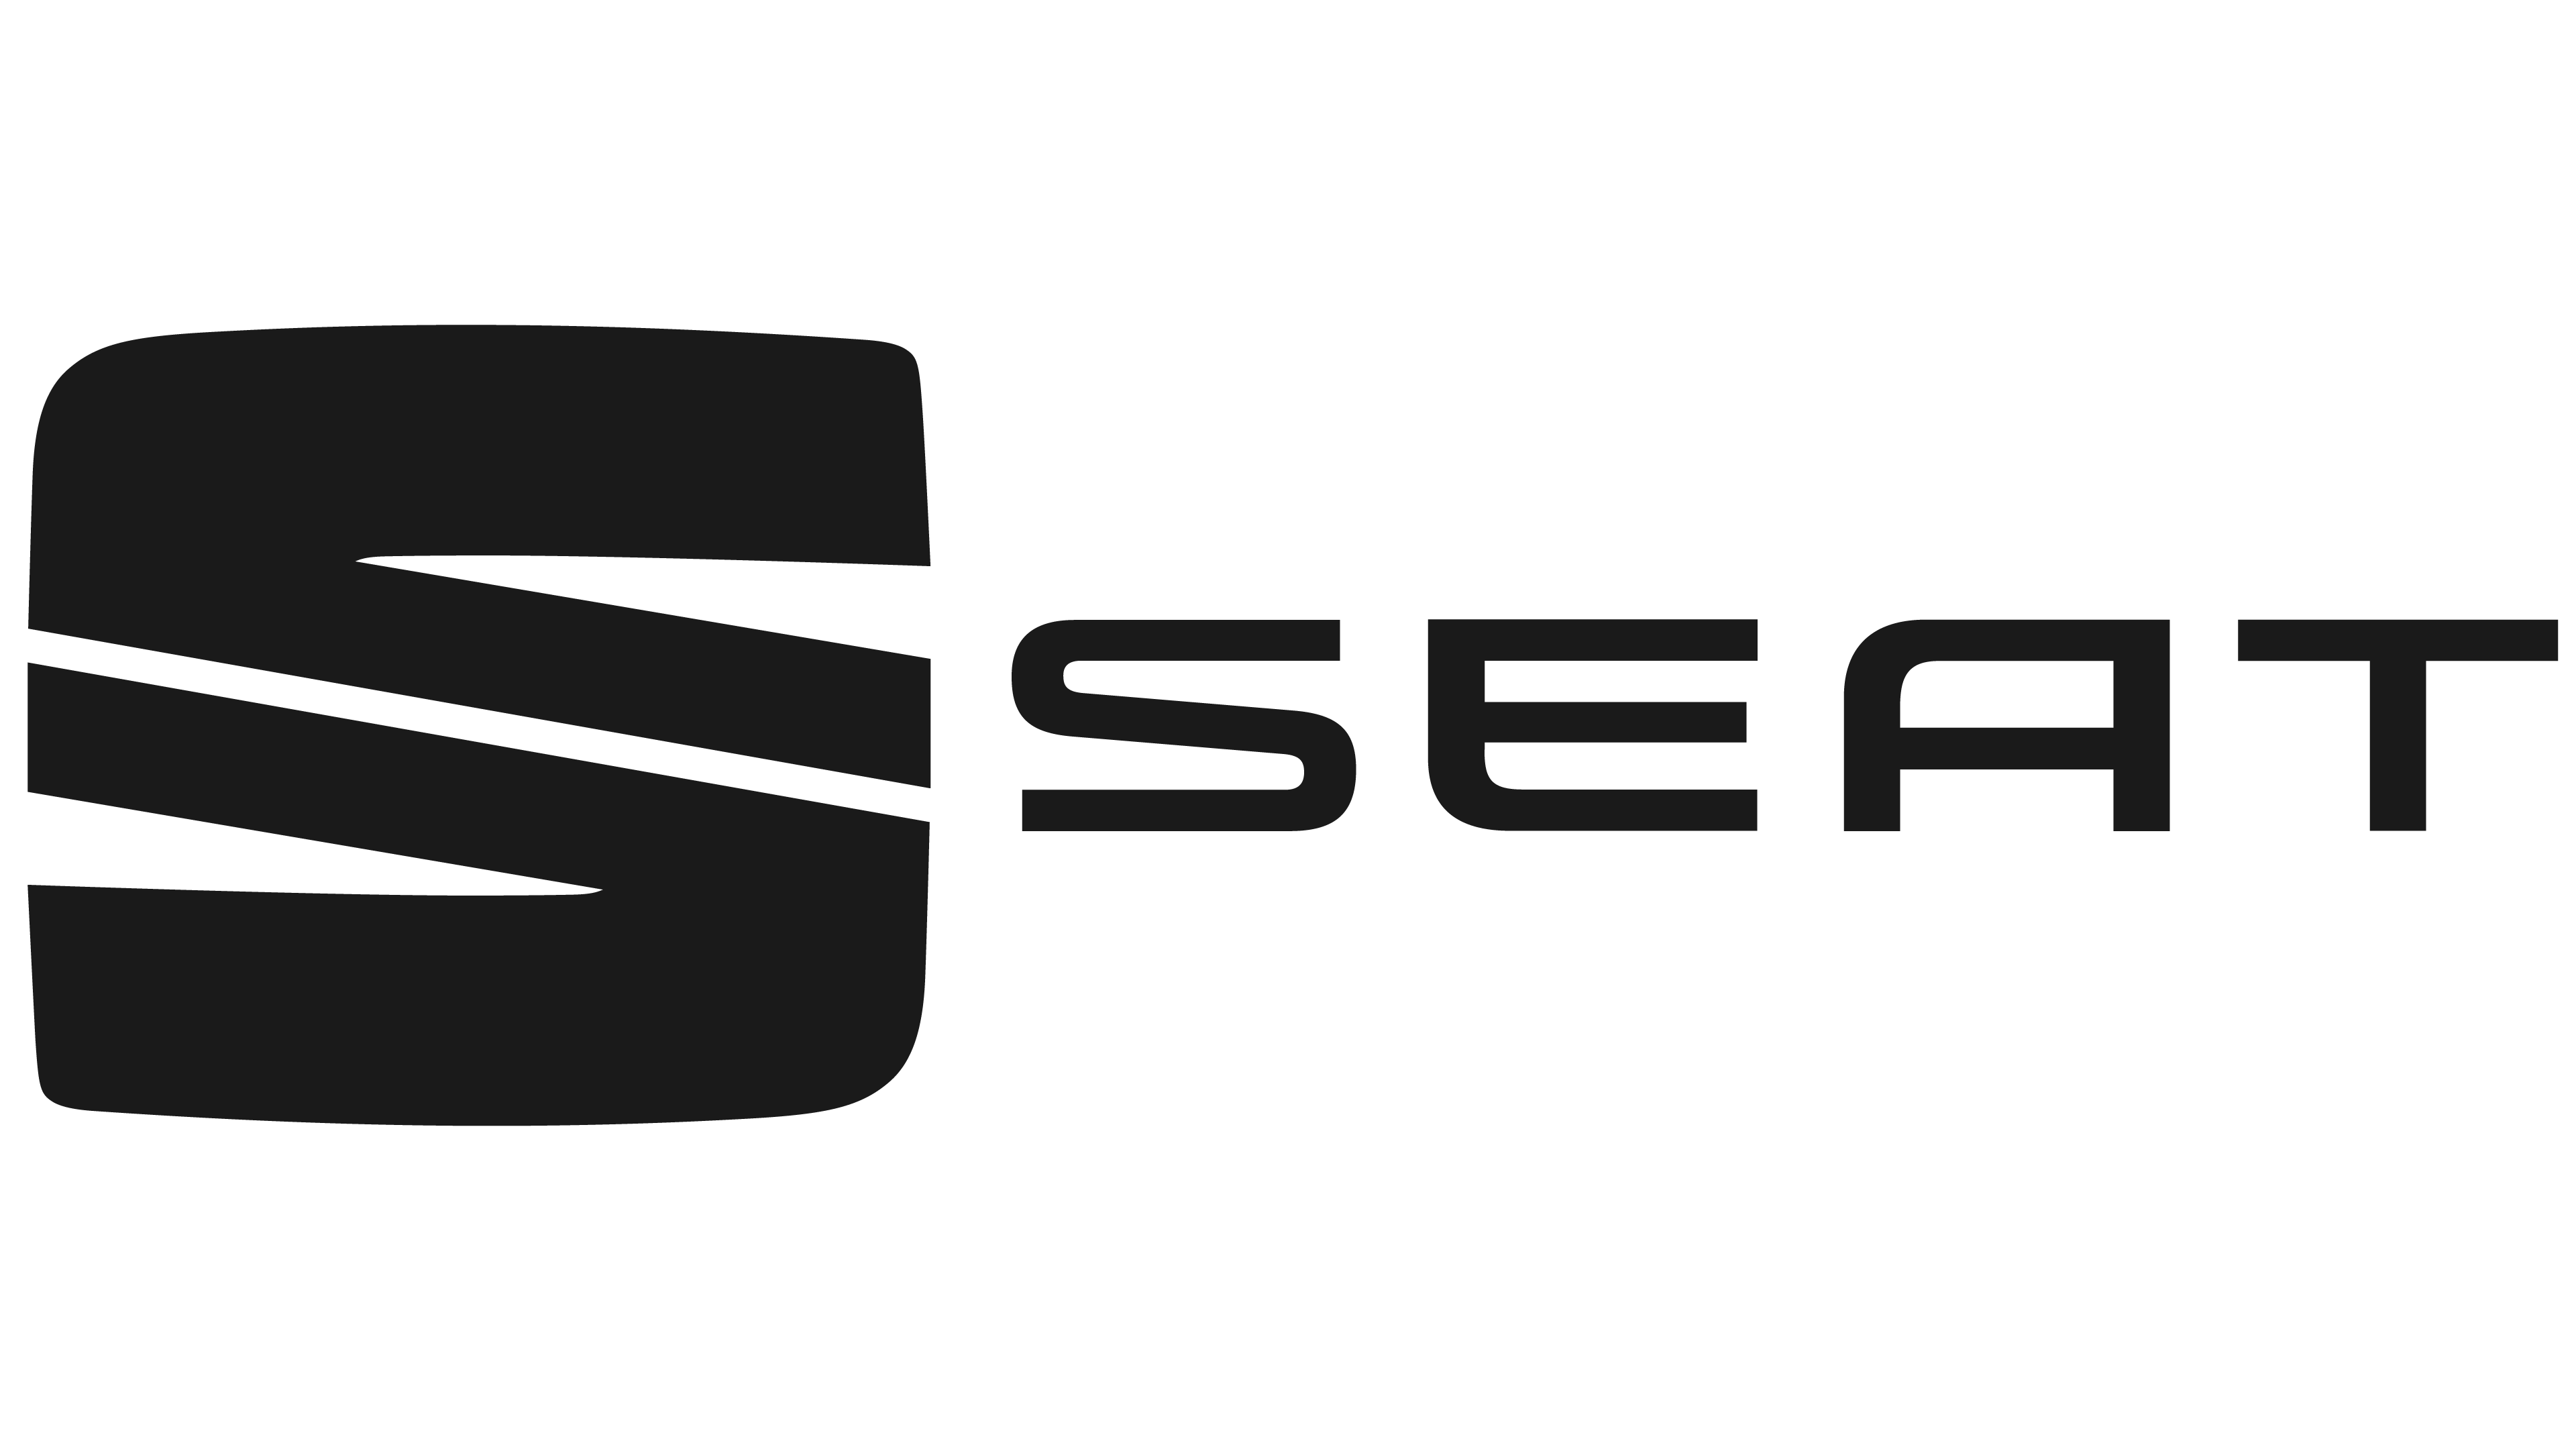 Seat Logo Png Image | Png Mar